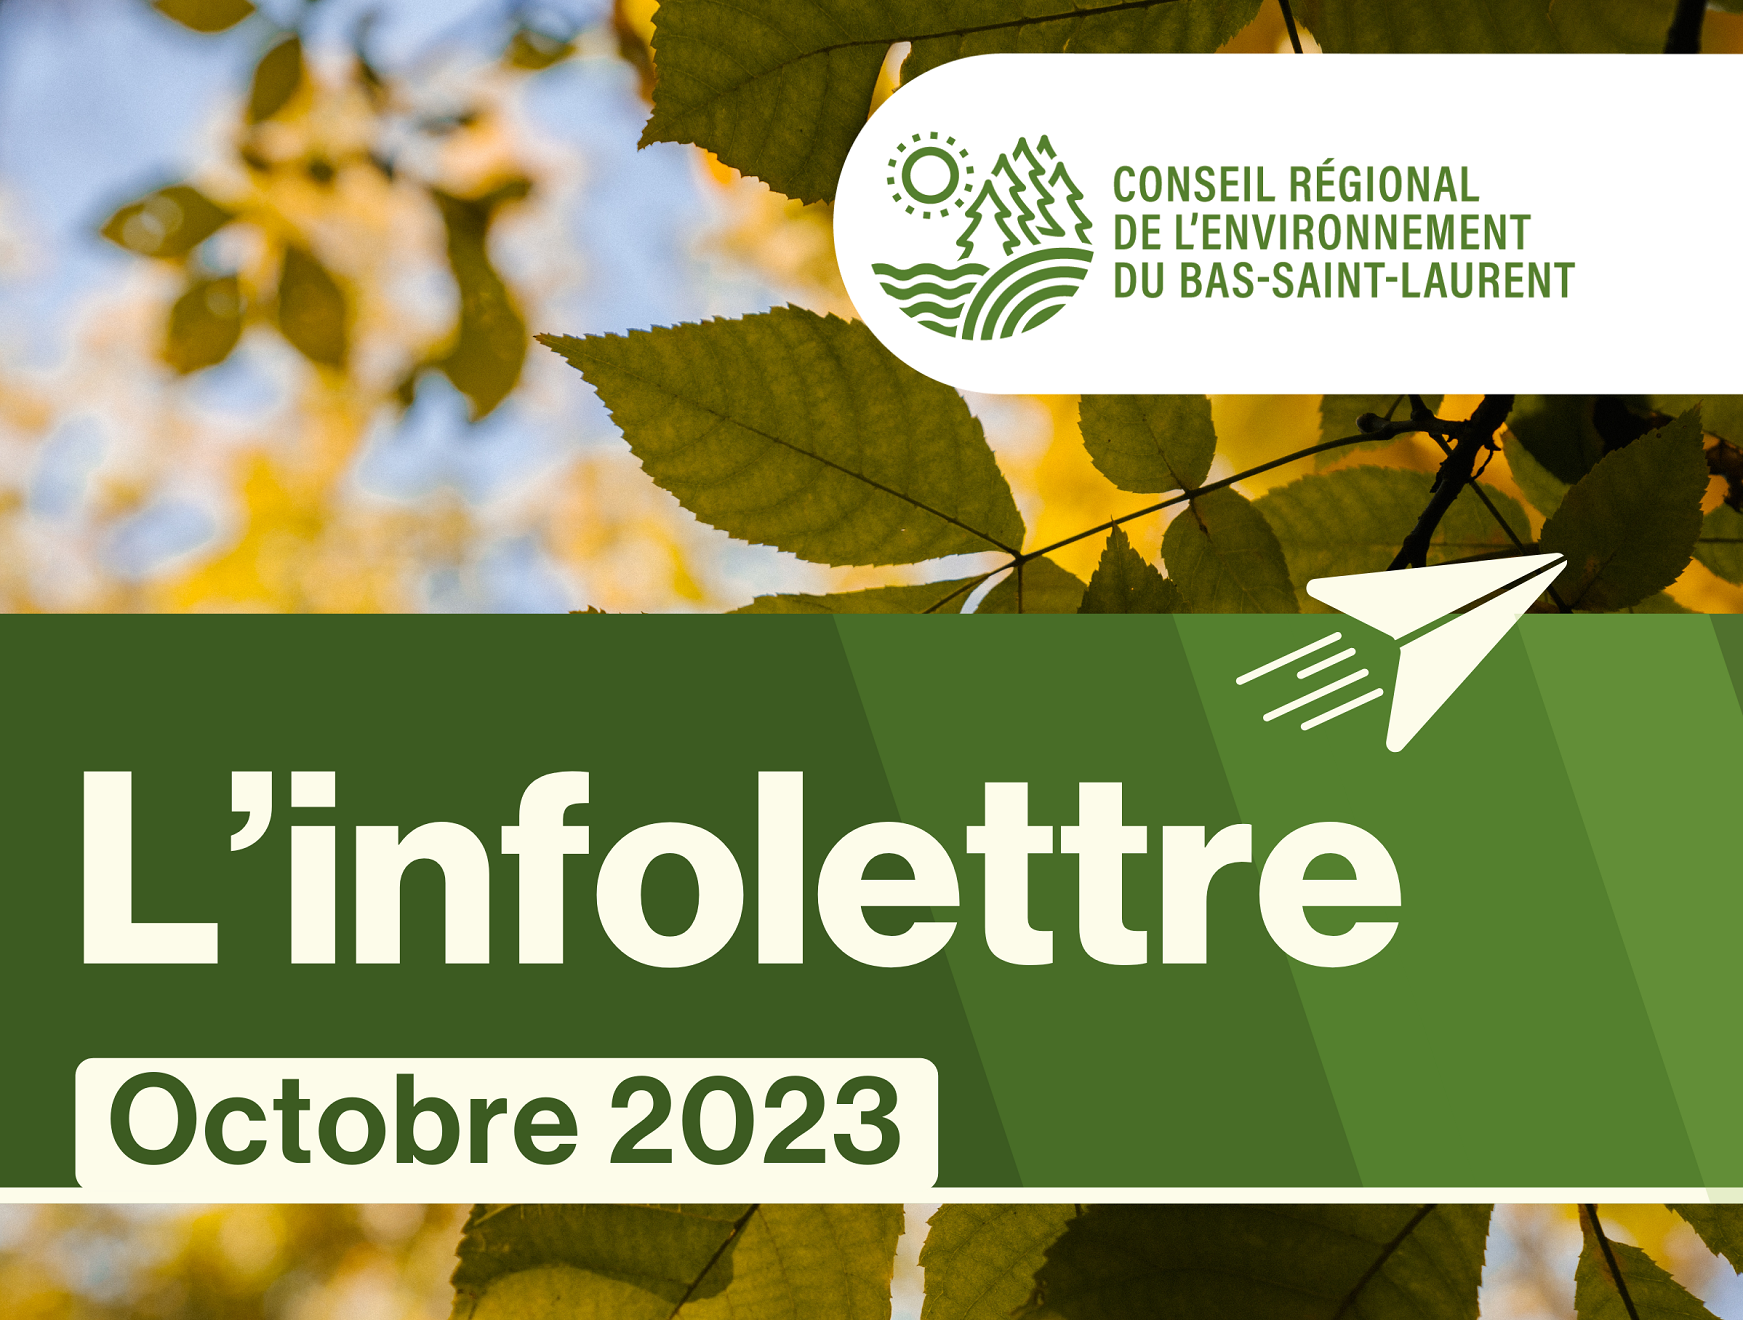 Infolettre d’octobre du Conseil régional de l’environnement du Bas-Saint-Laurent